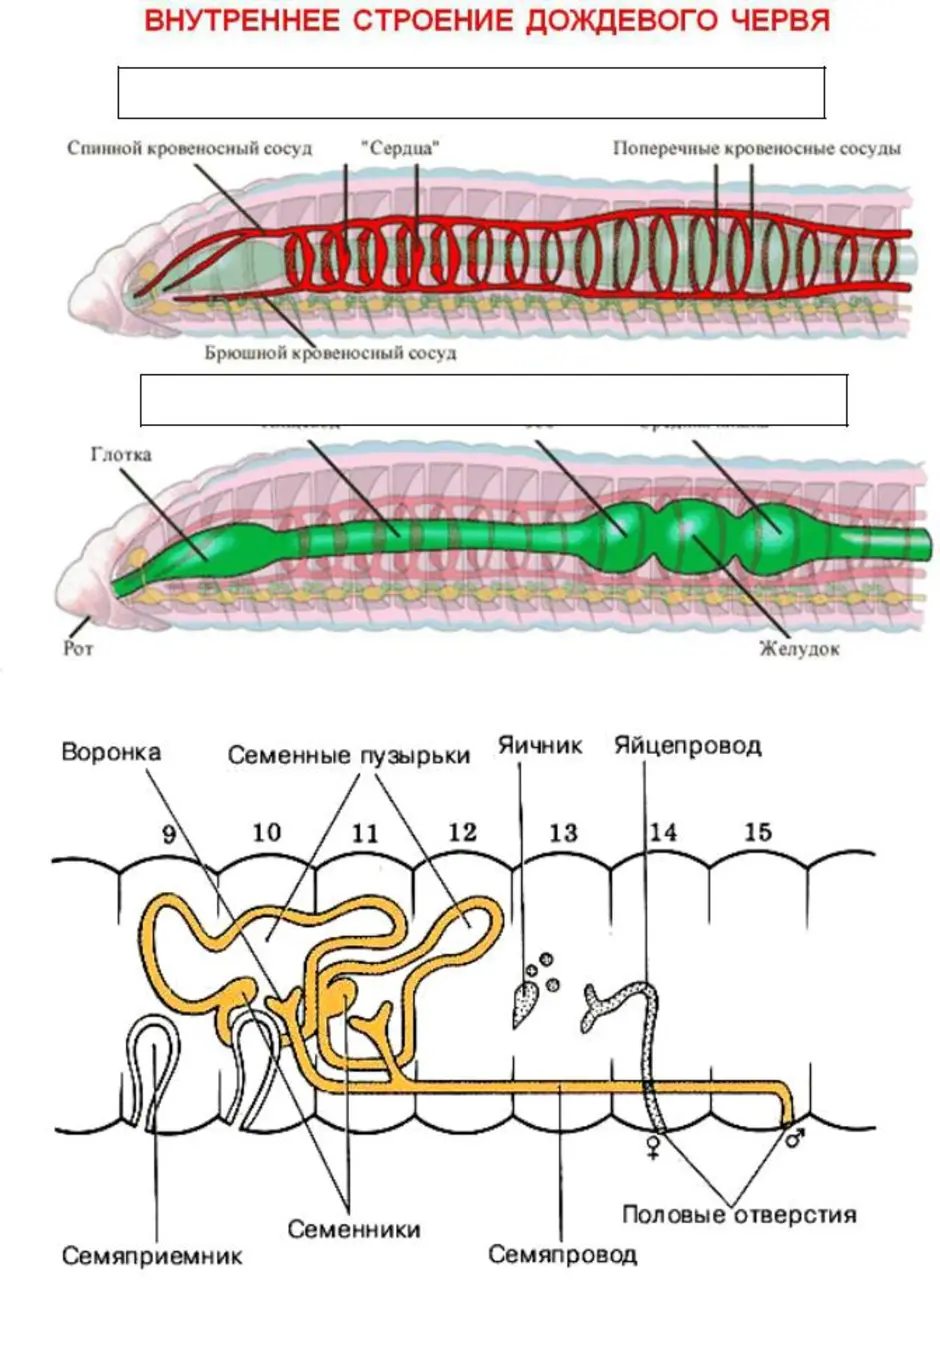 Кольцевые сосуды дождевого червя. Строение половой системы дождевого червя. Внутреннее строение дождевого червя системы органов. Системы дождевого червя таблица. Кольчатый червь строение половой системы.